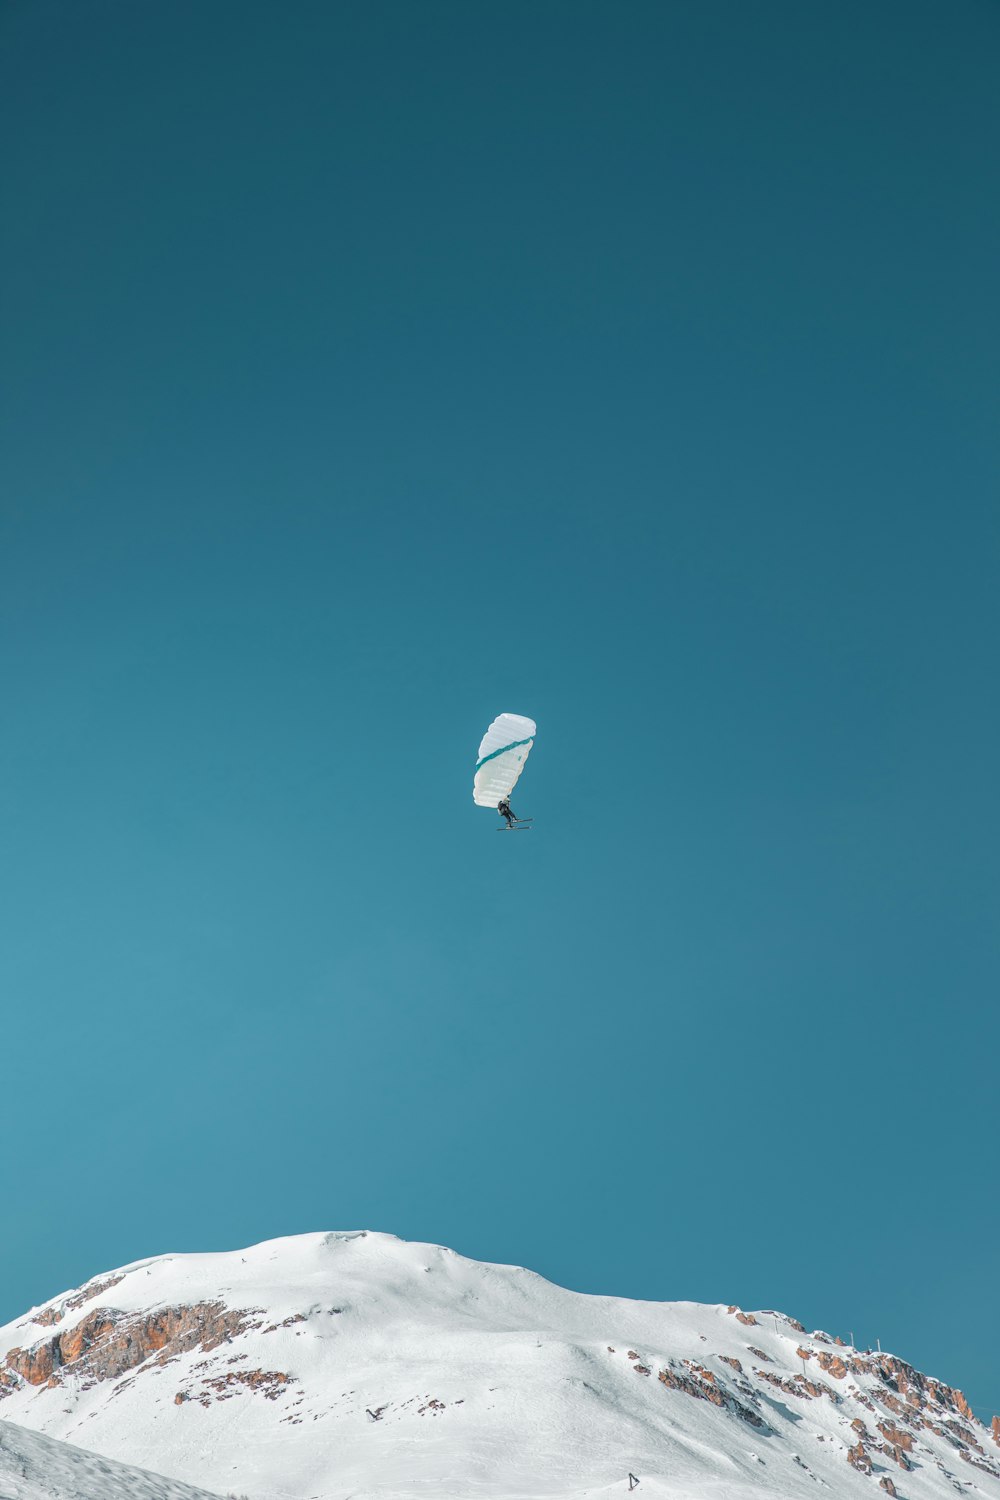 una cometa volando sobre una montaña cubierta de nieve bajo un cielo azul